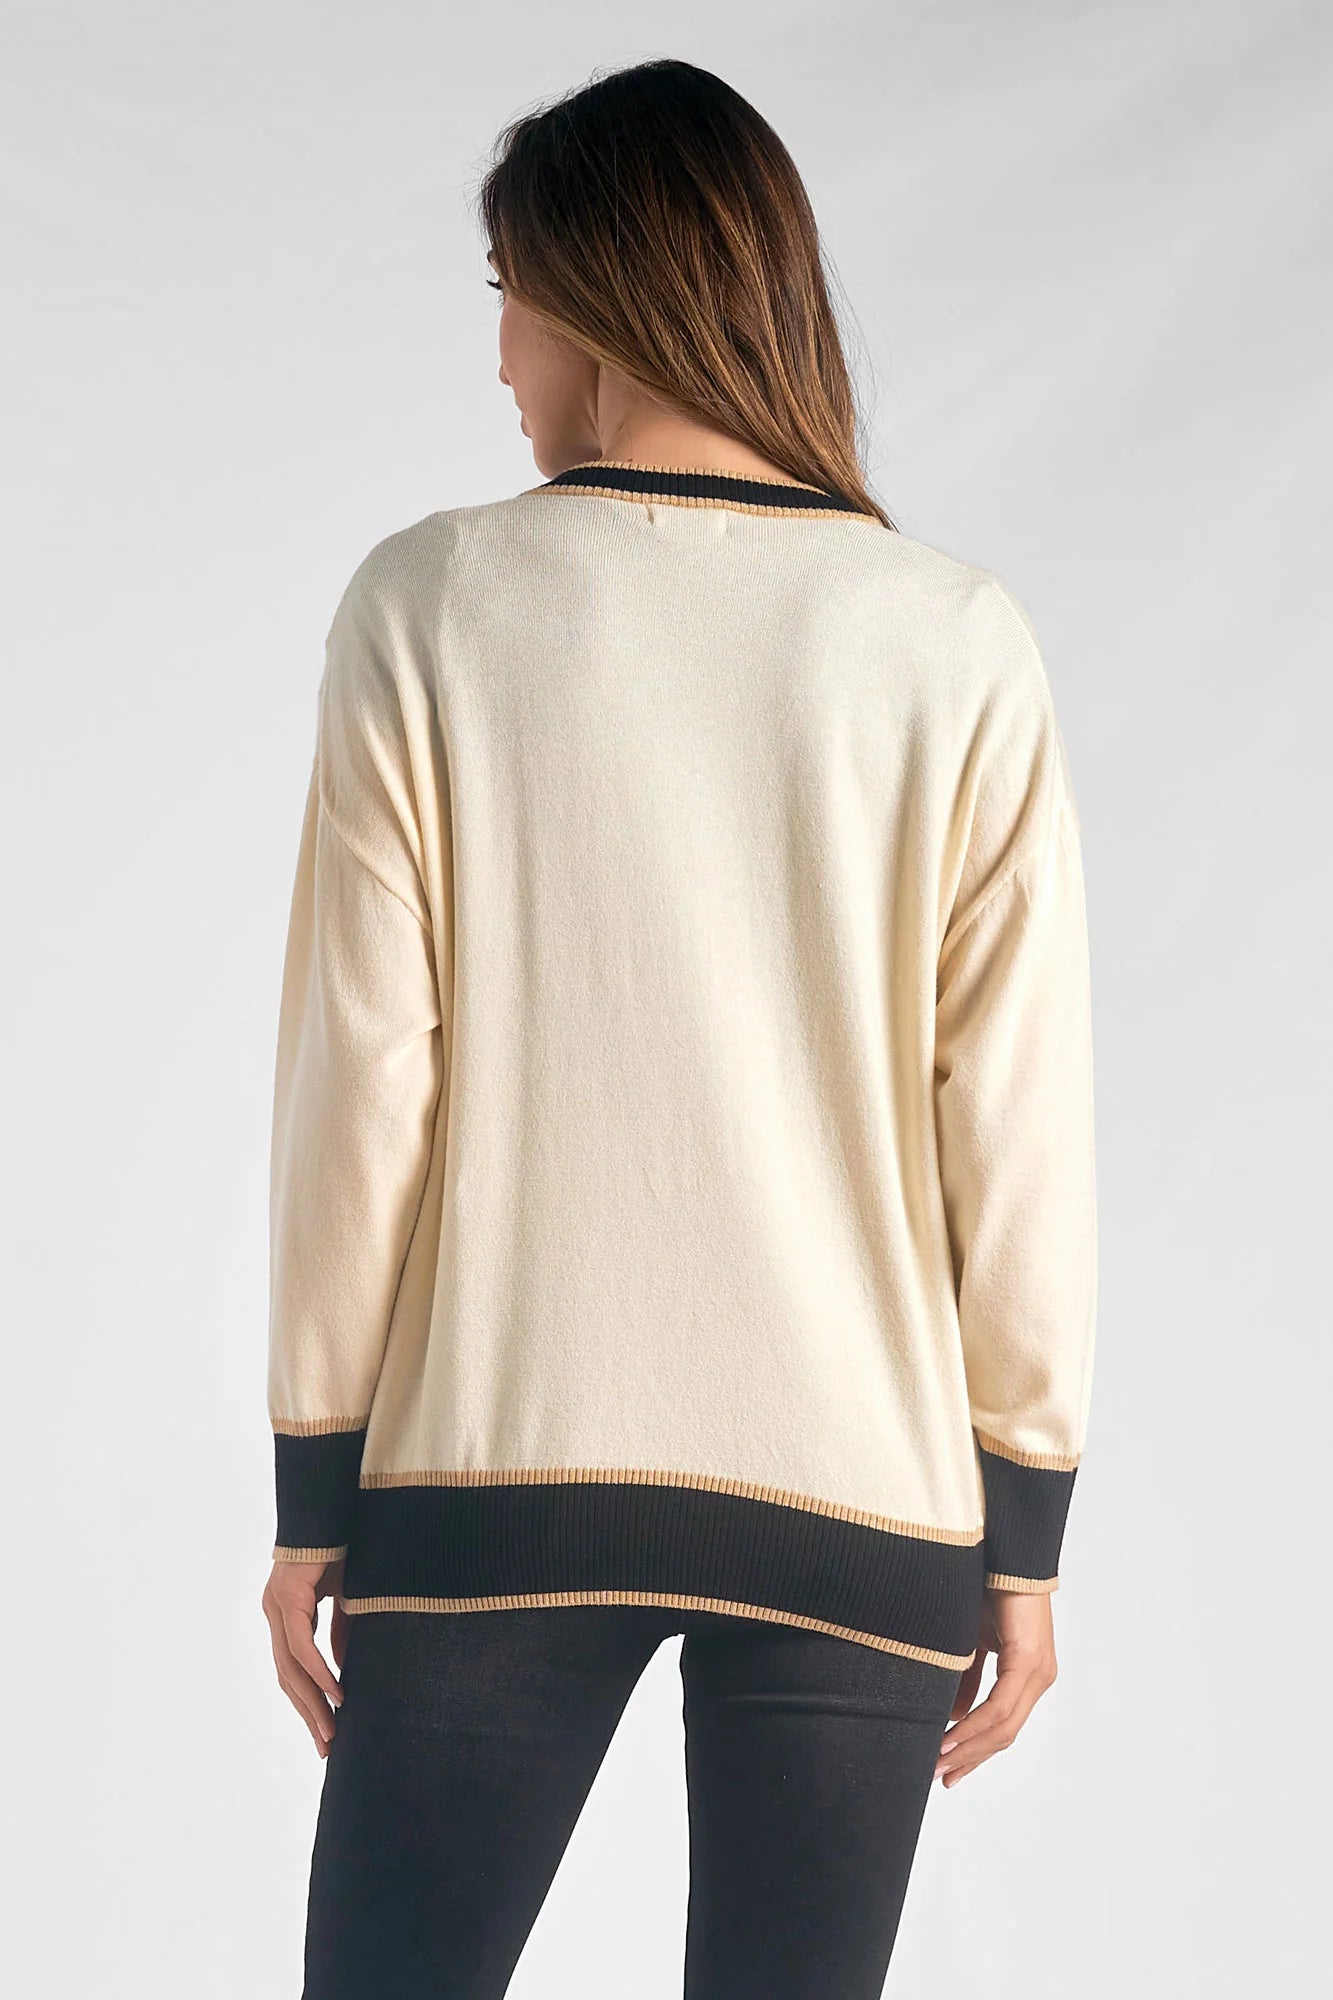 Elan Cardigan Sweater